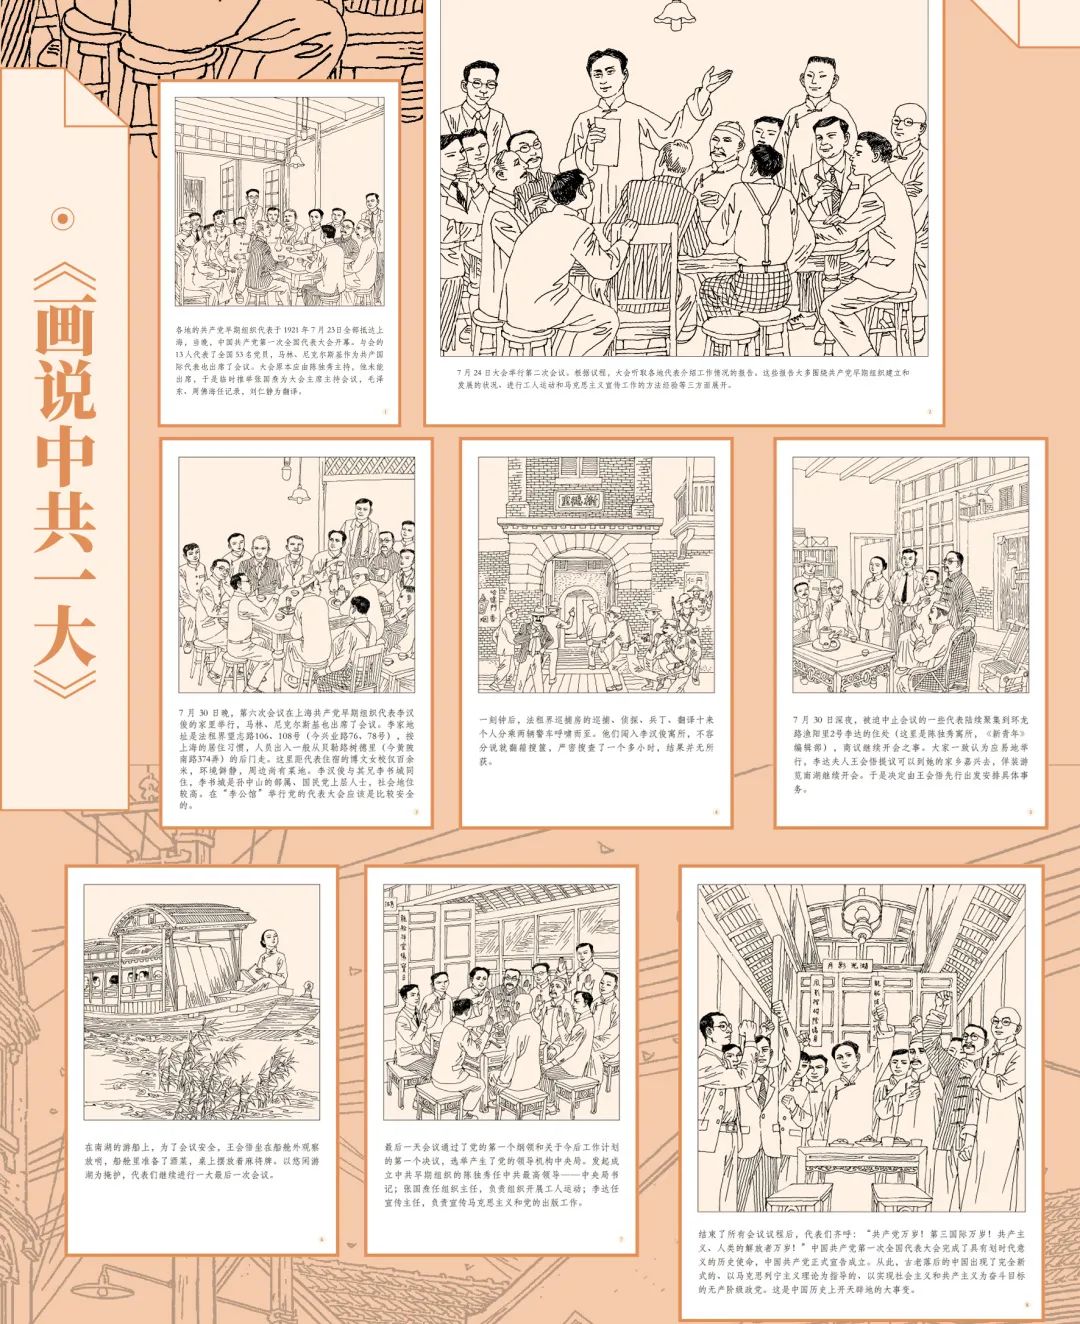 澎湃号>上海宝山>展览用连环画串起中国共产党百年光辉历程,如同一条